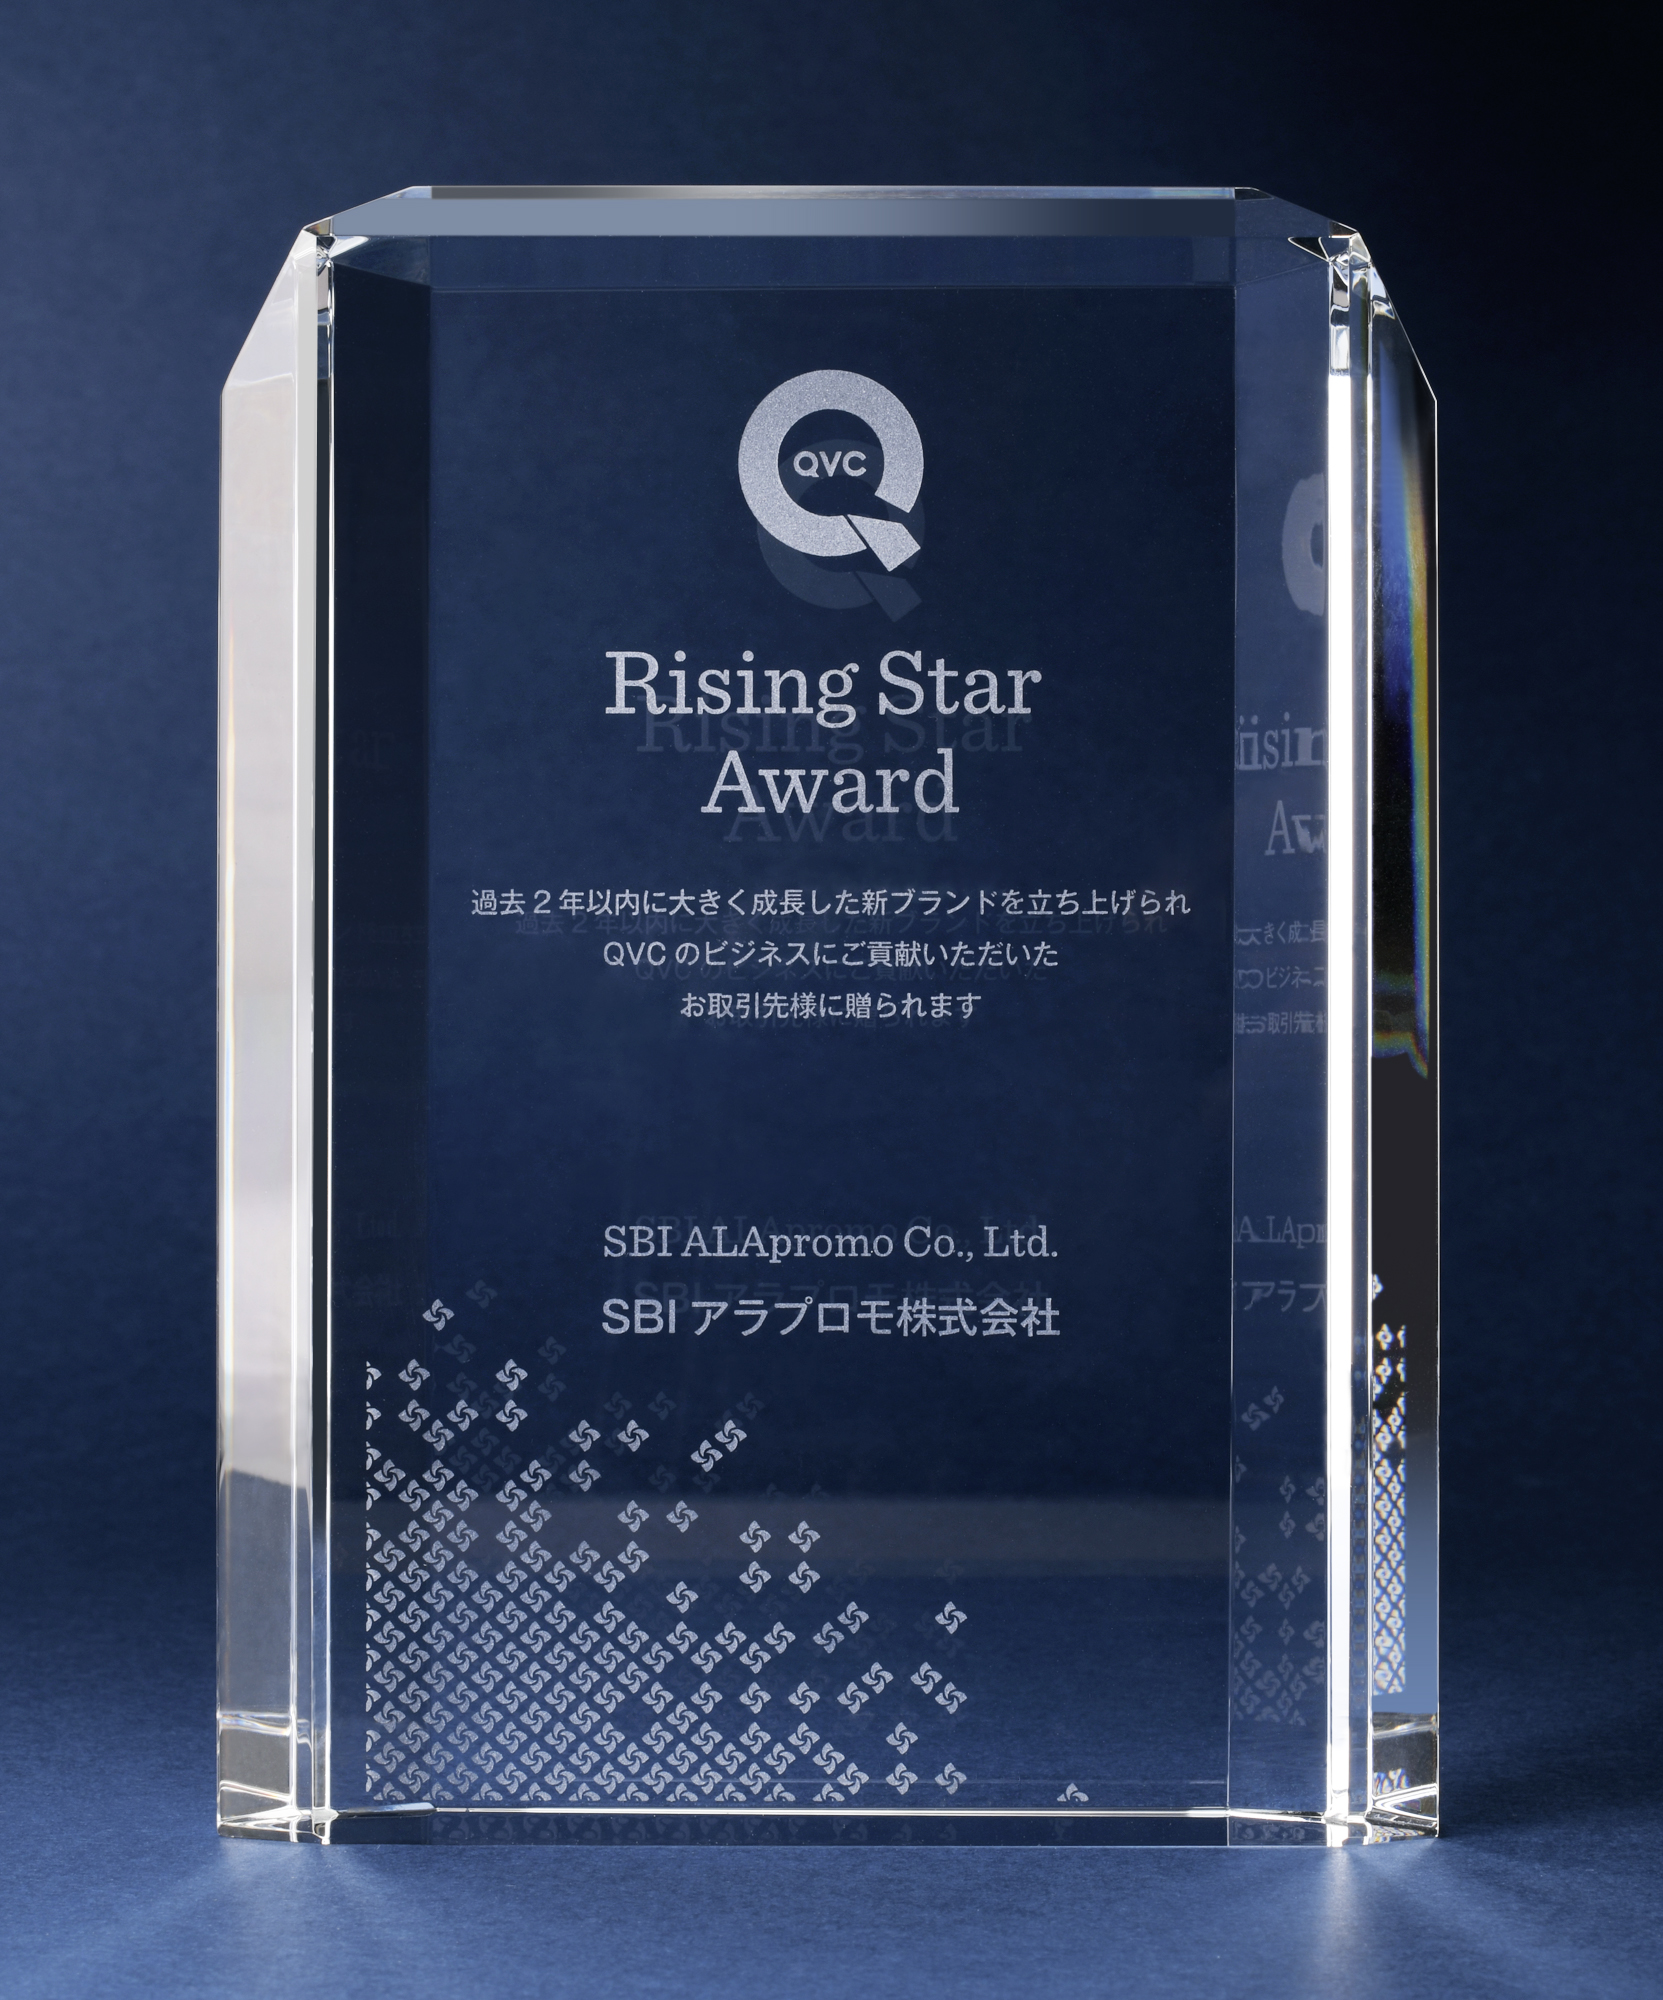 Qvcジャパン ライジング スター アワード 受賞 ｓｂｉアラプロモ株式会社のプレスリリース